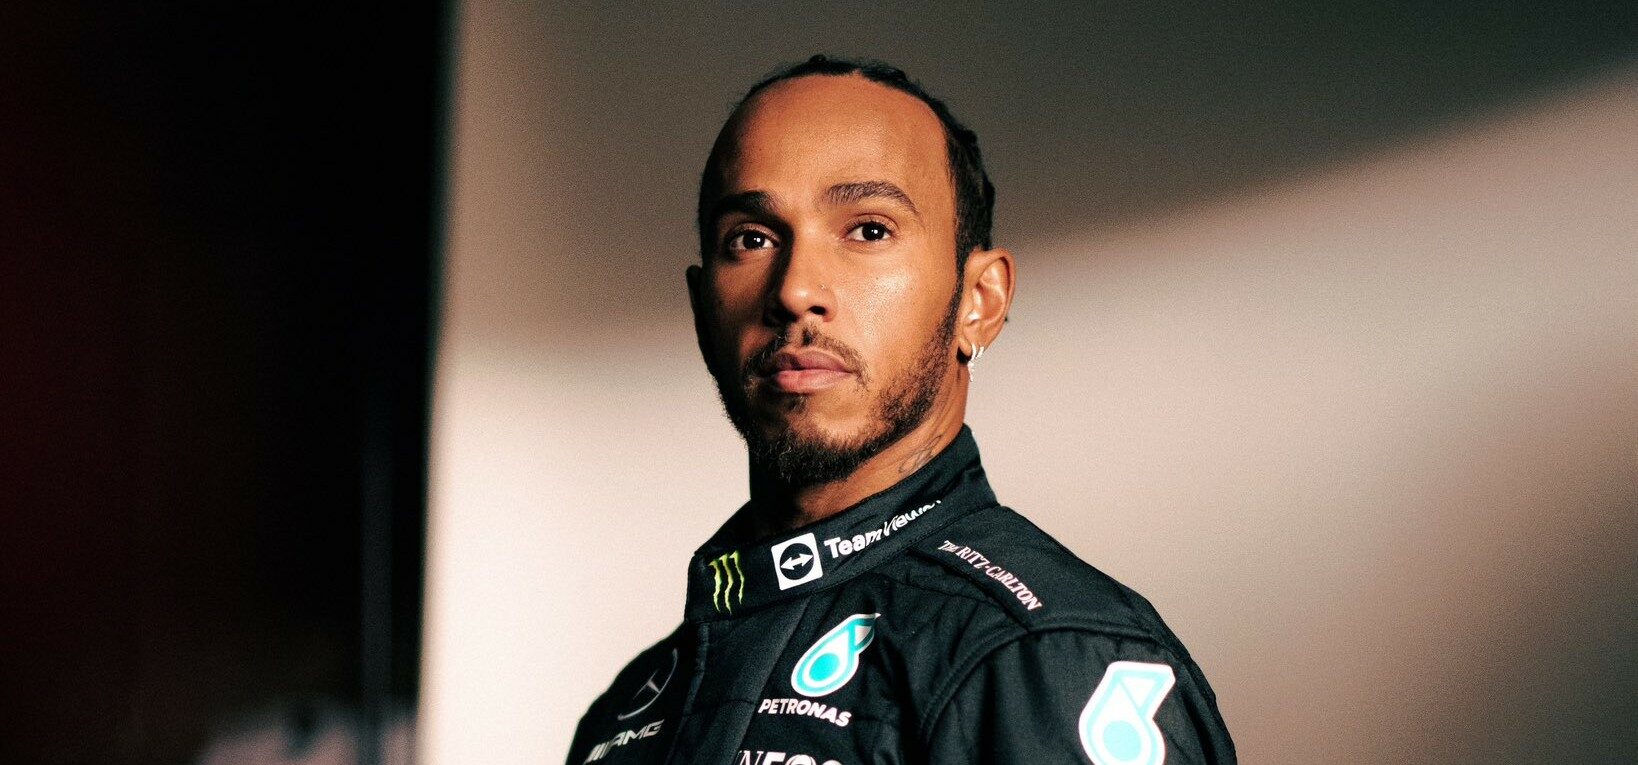 Lewis Hamilton comenta racismo sofrido nos tempos de escola: 'Traumatizante' - ISTOÉ Independente